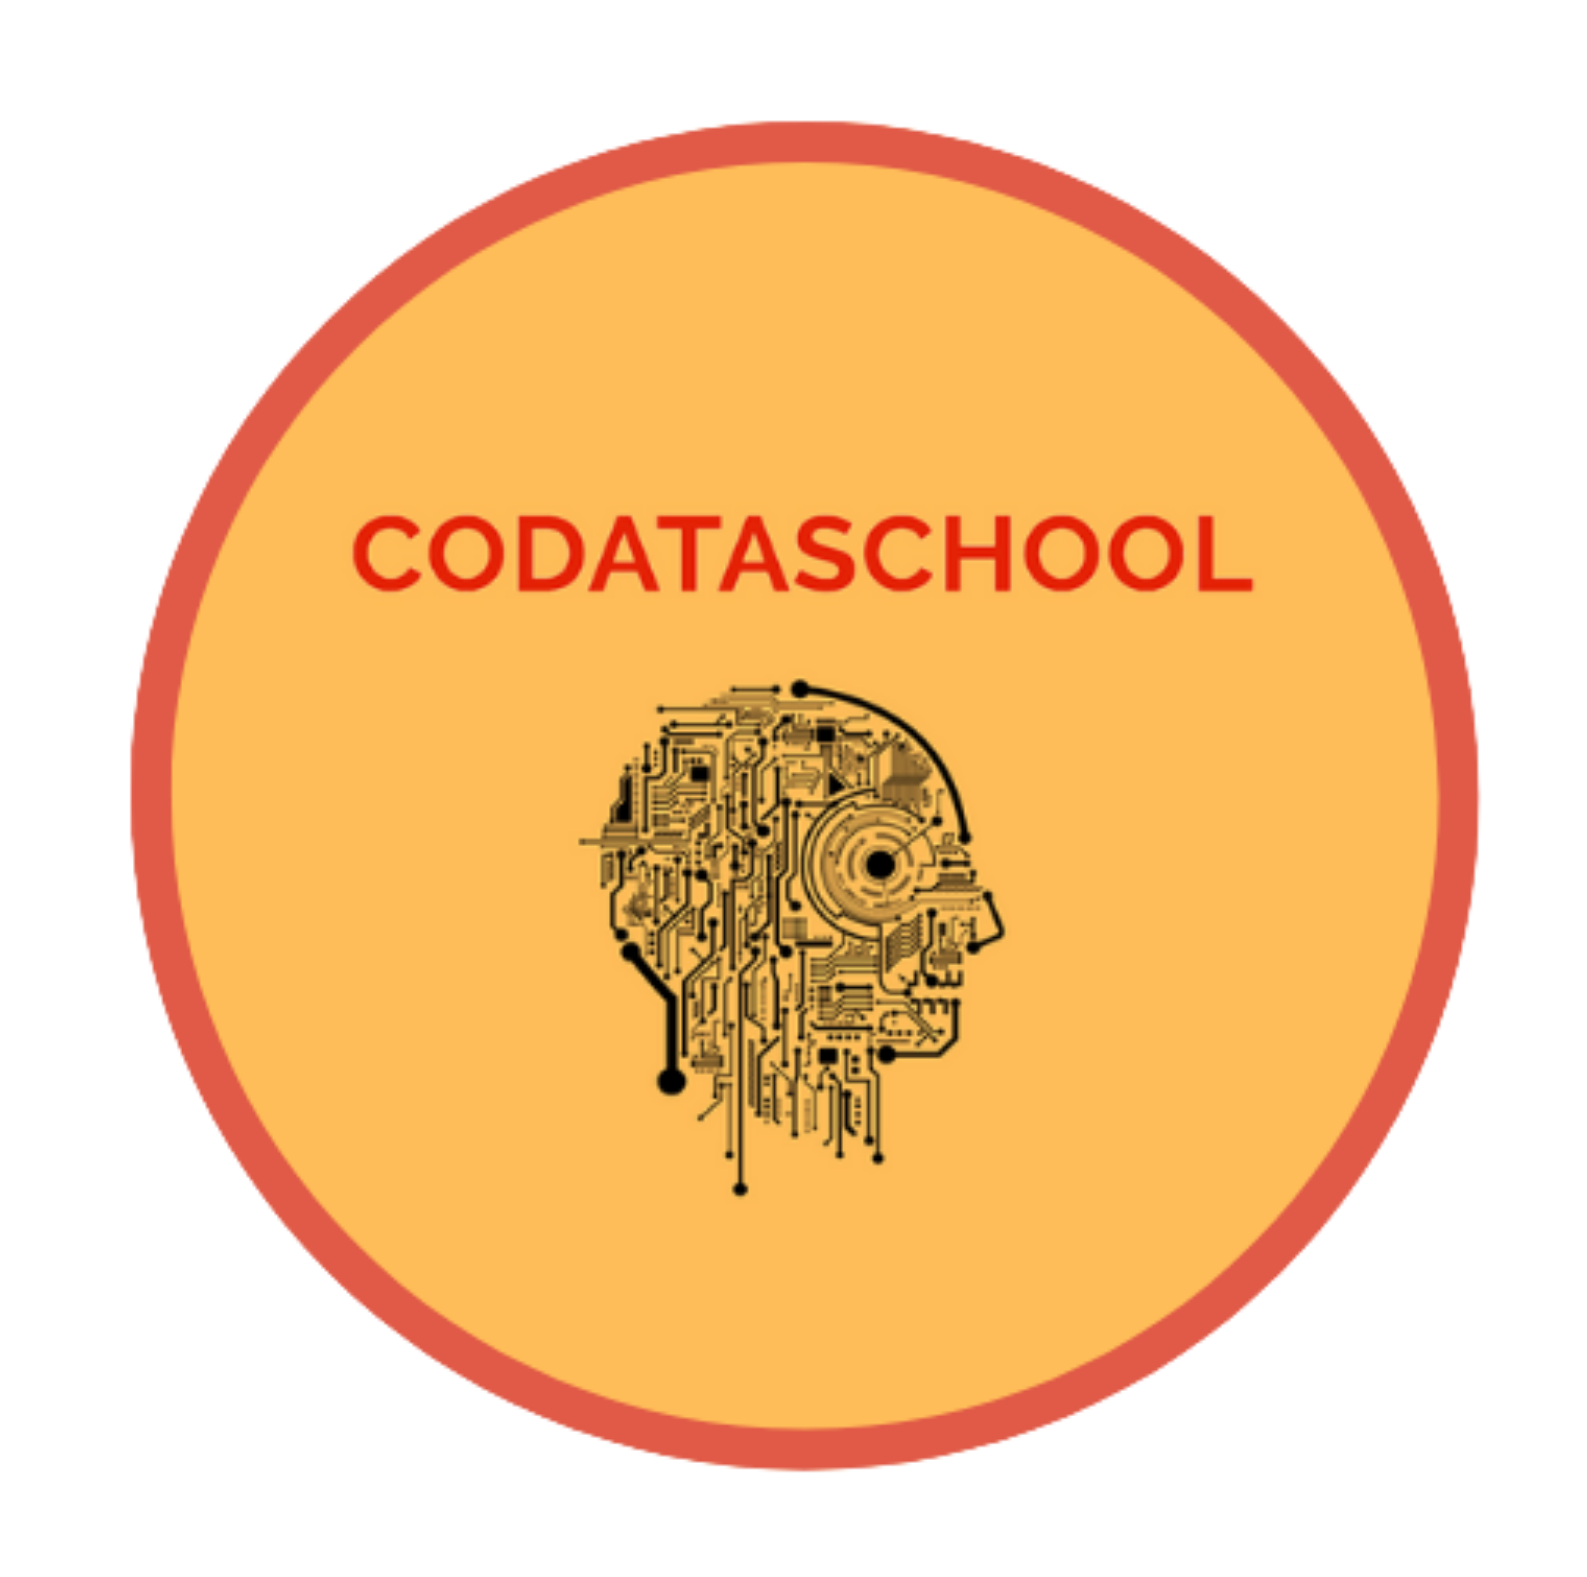 Codataschool : Replay de l’intervention de Vincent Lecerf sur le thème « Les métavers pour une société plus juste ? »